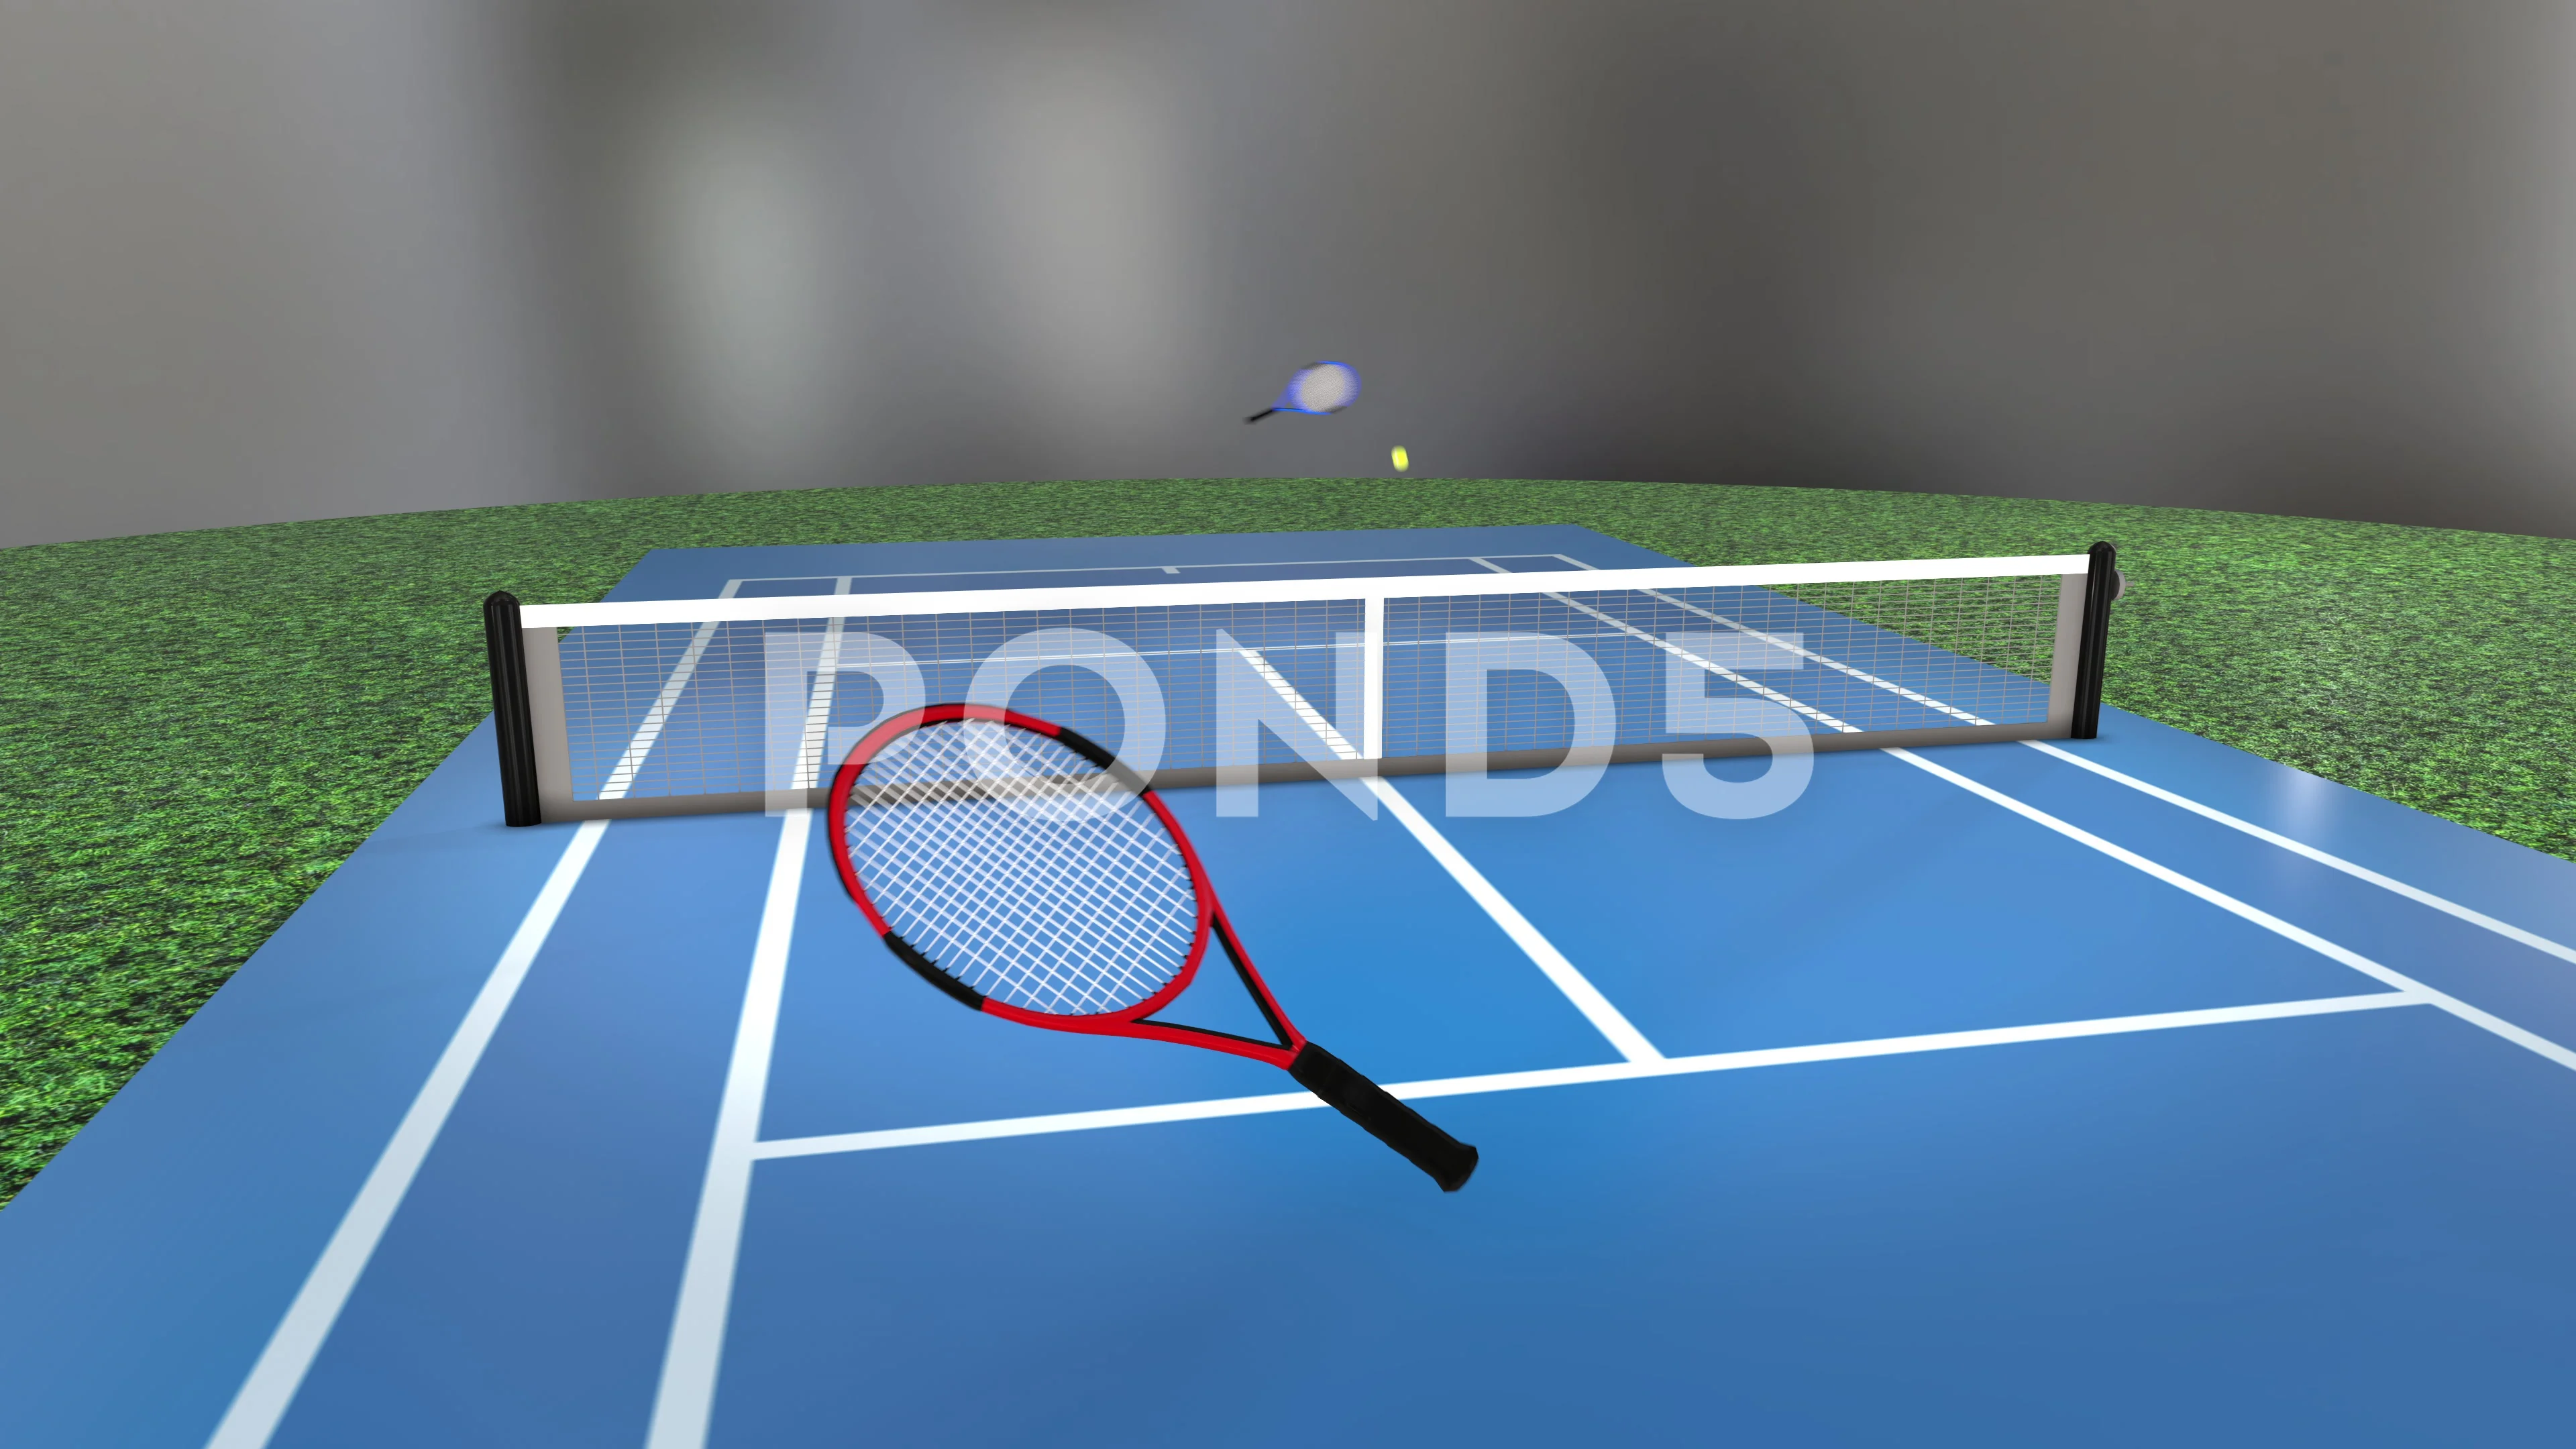 tennis court cartoon